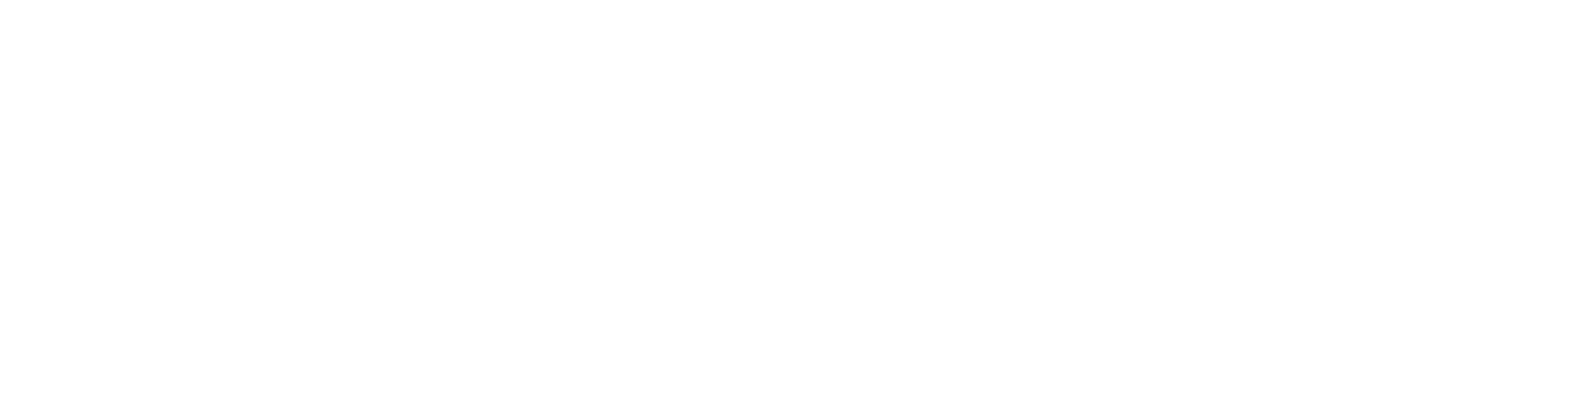 Alkermes Logo groß für dunkle Hintergründe (transparentes PNG)